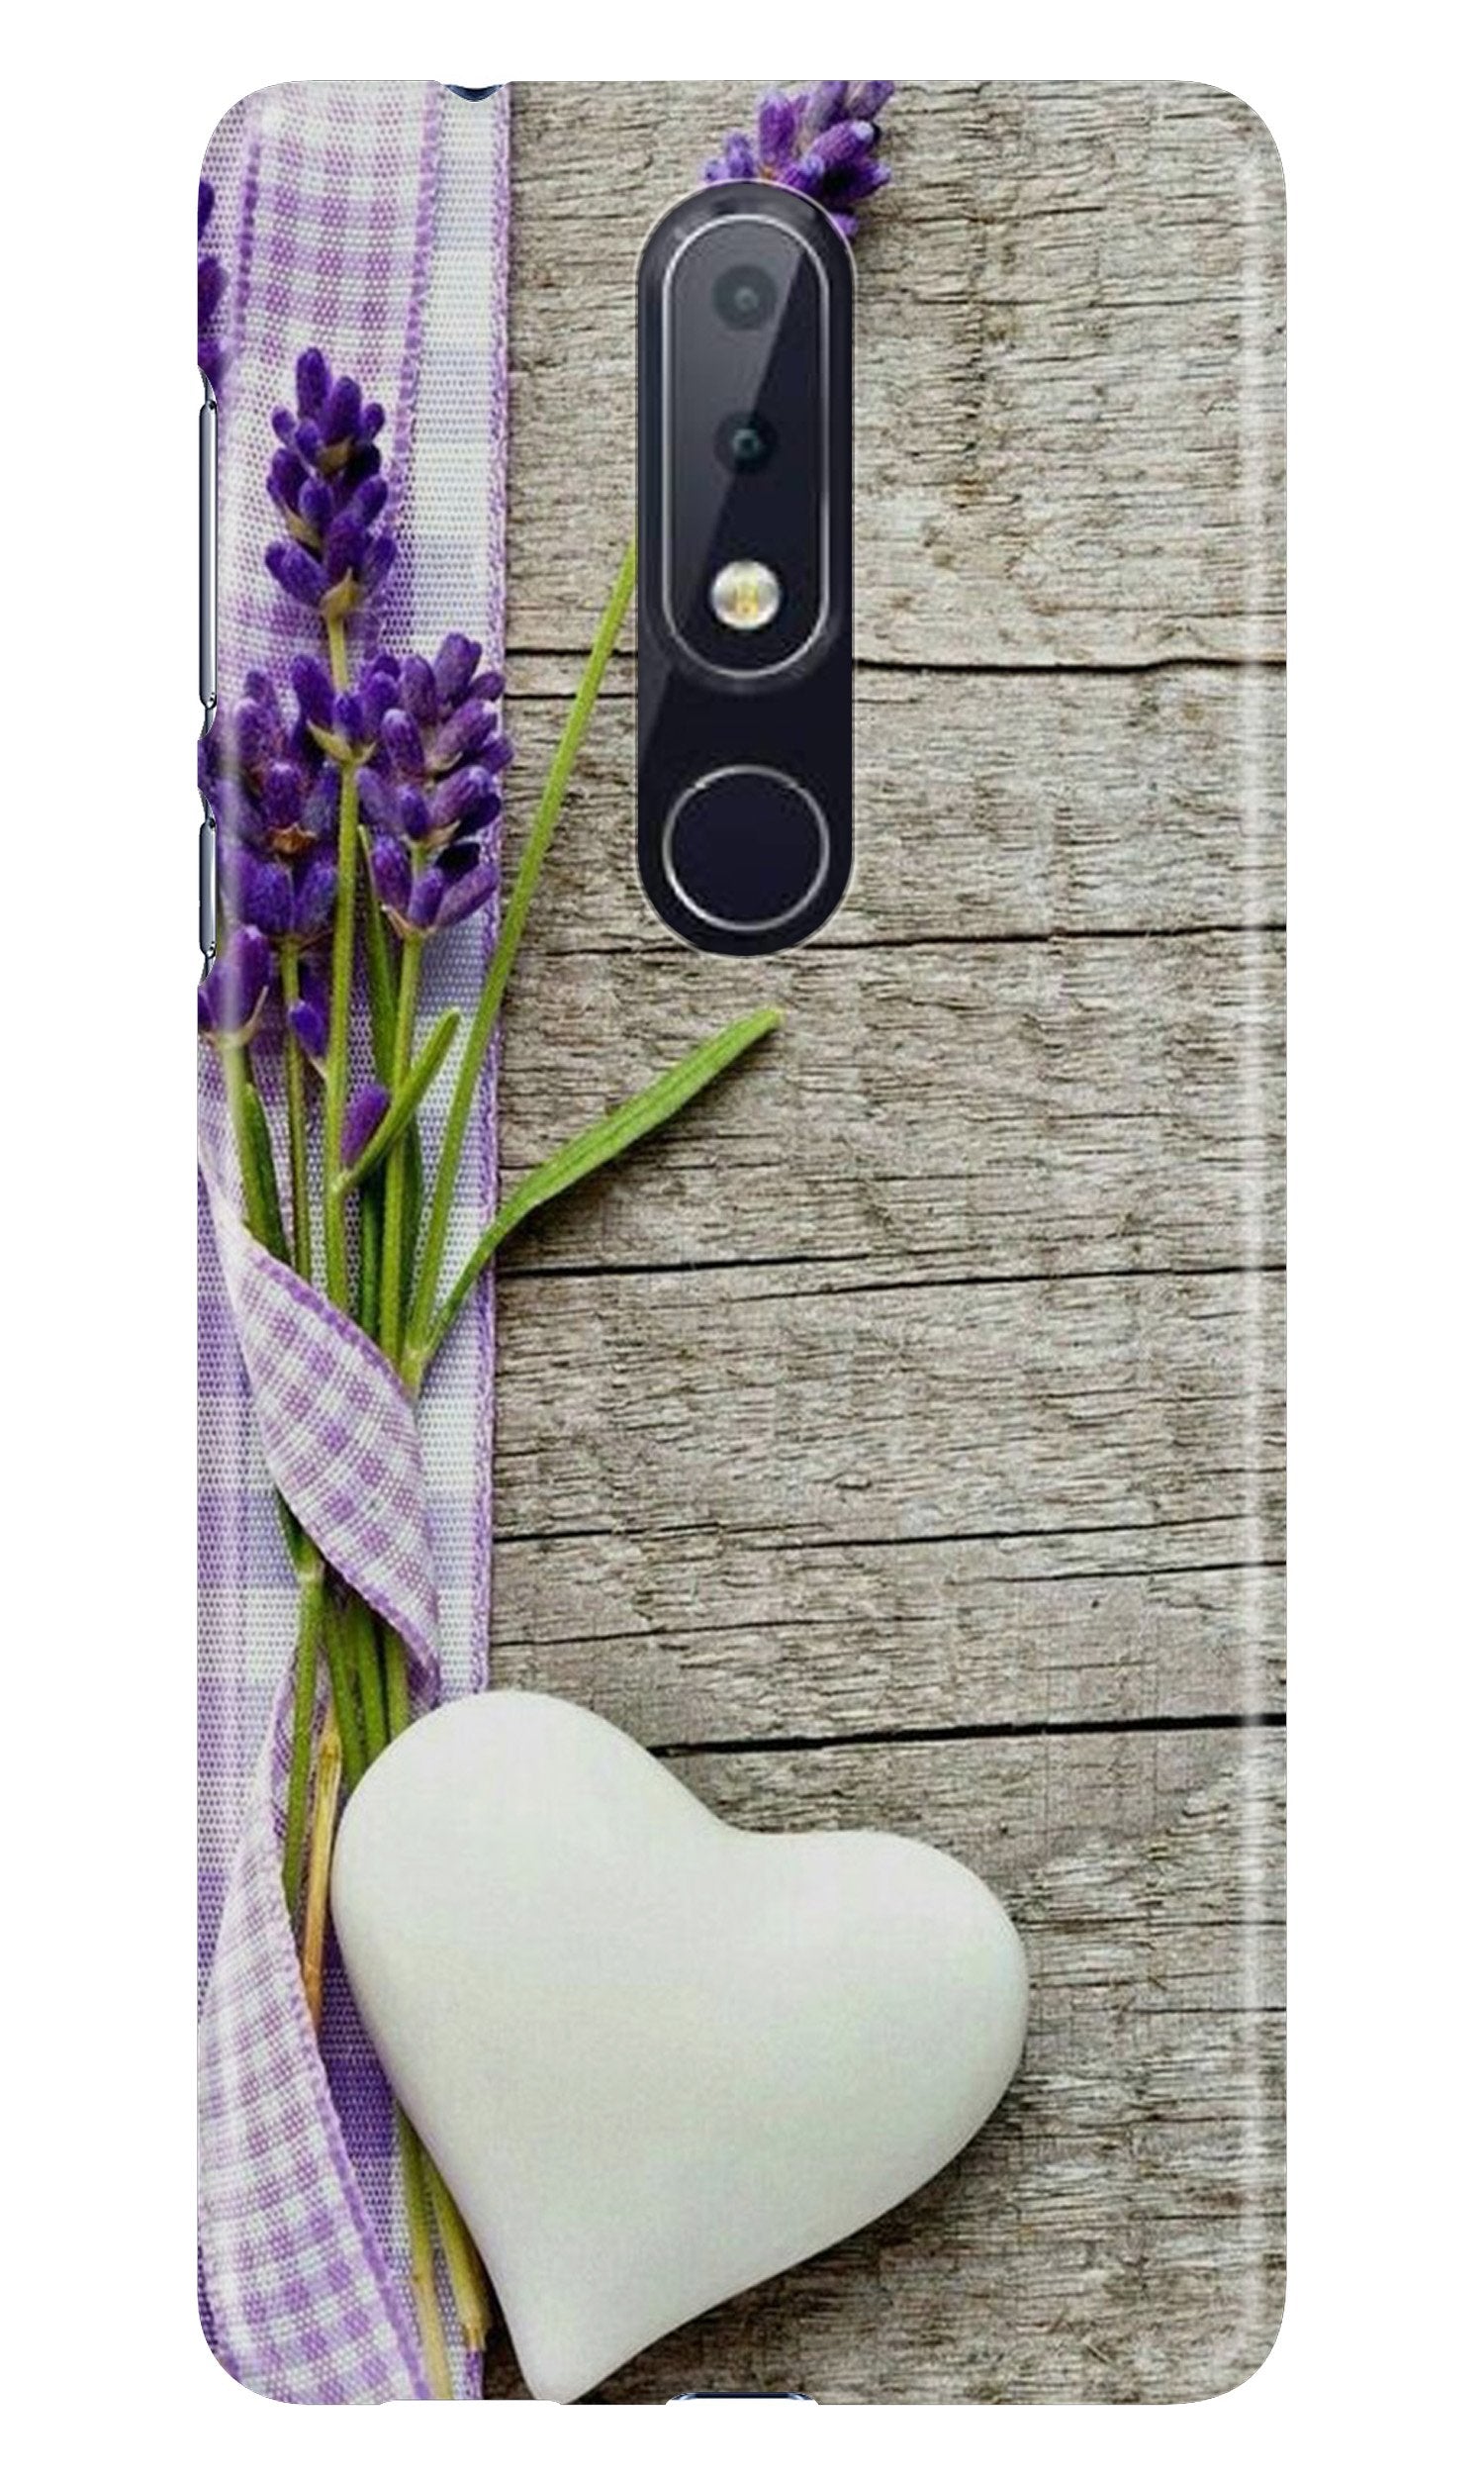 White Heart Case for Nokia 7.1 (Design No. 298)